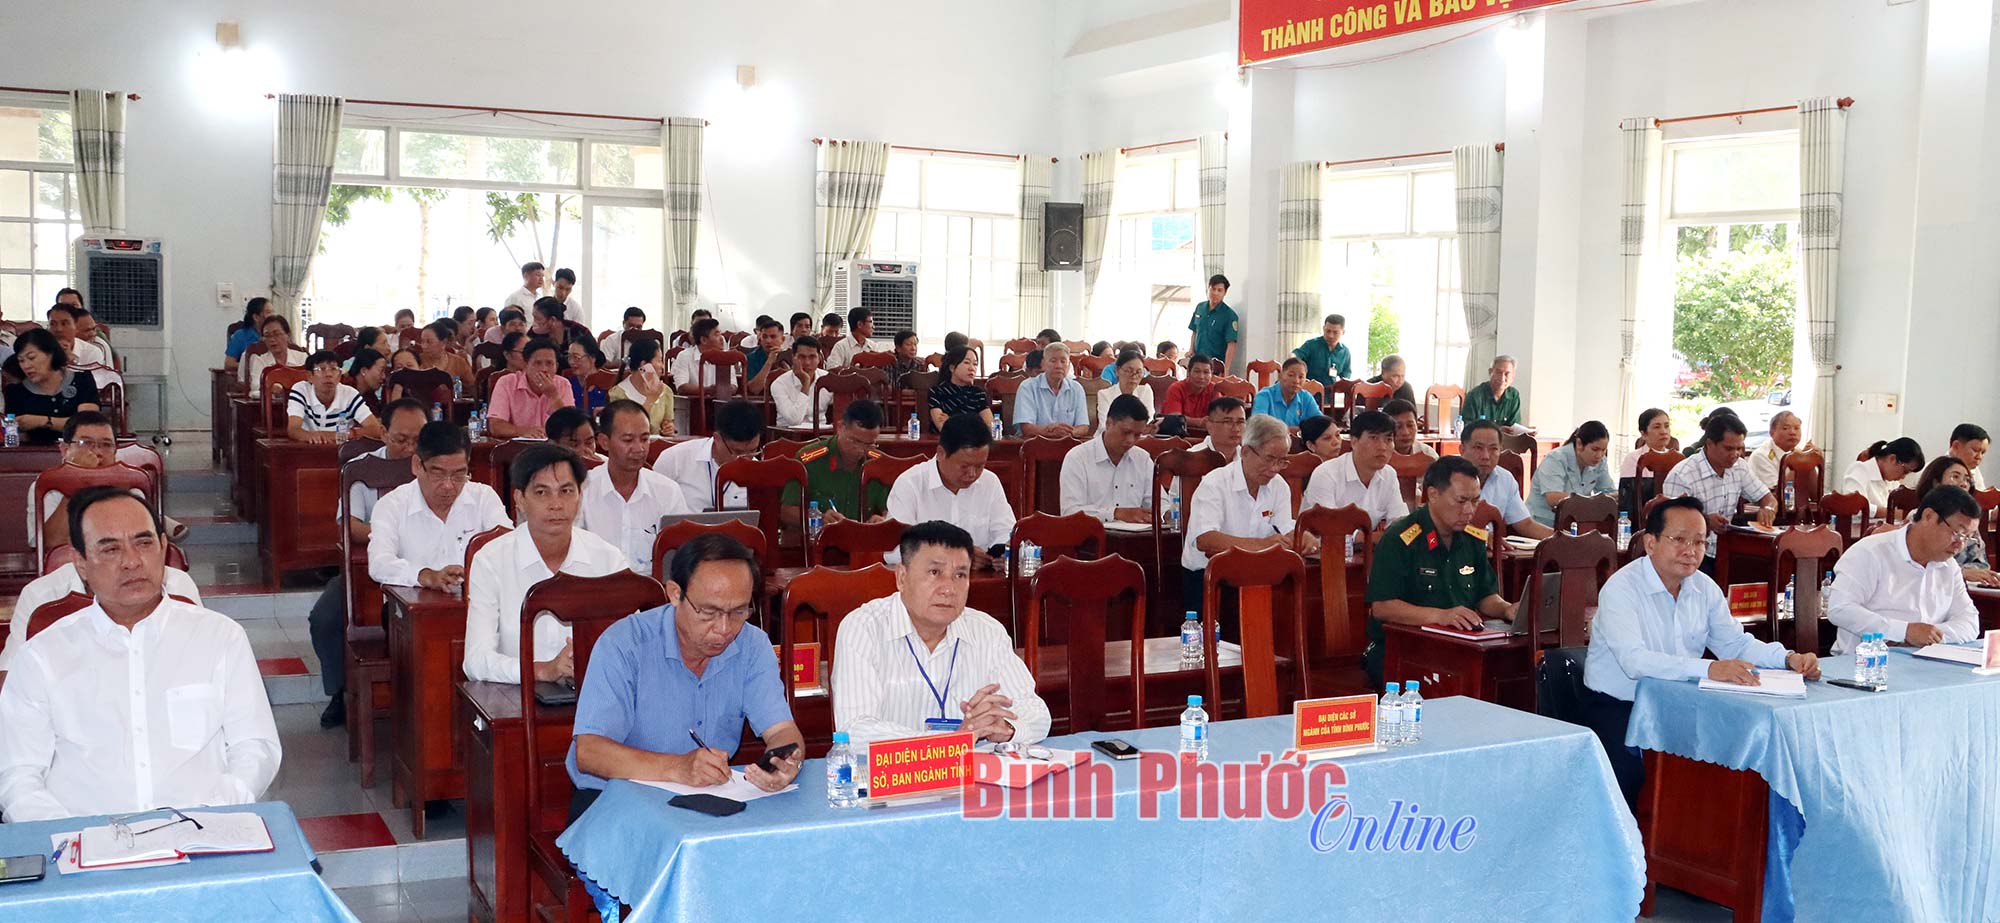 Đại biểu Quốc hội tỉnh Bình Phước tiếp xúc cử tri sau Kỳ họp thứ 7, Quốc hội khóa XV